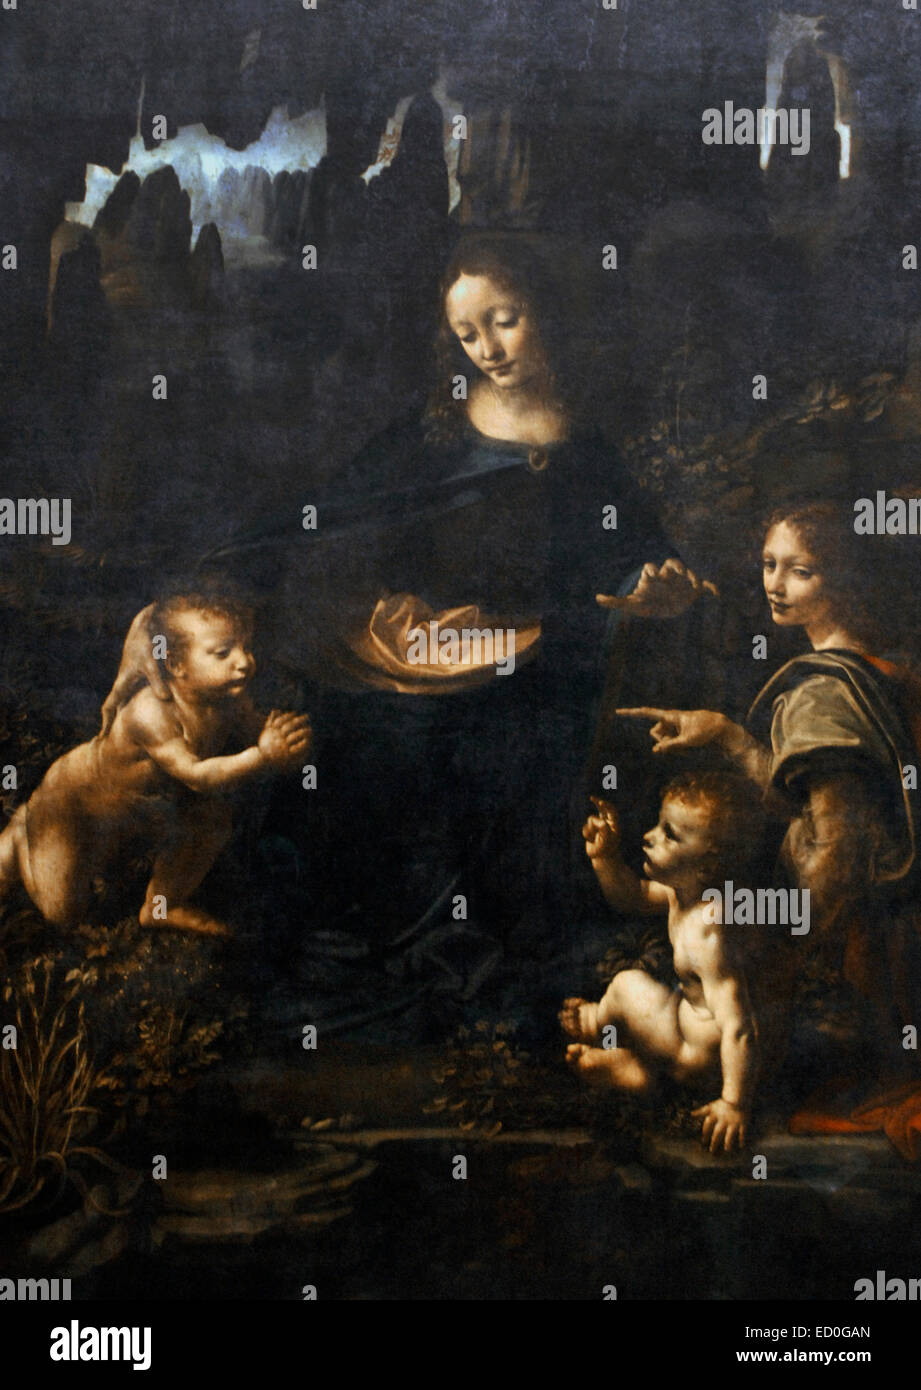 Leonardo da Vinci (1452-1519). Polymathe italien. Vierge aux rochers. 1483-1486. Huile sur panneau. Musée du Louvre. Paris. La France. Banque D'Images